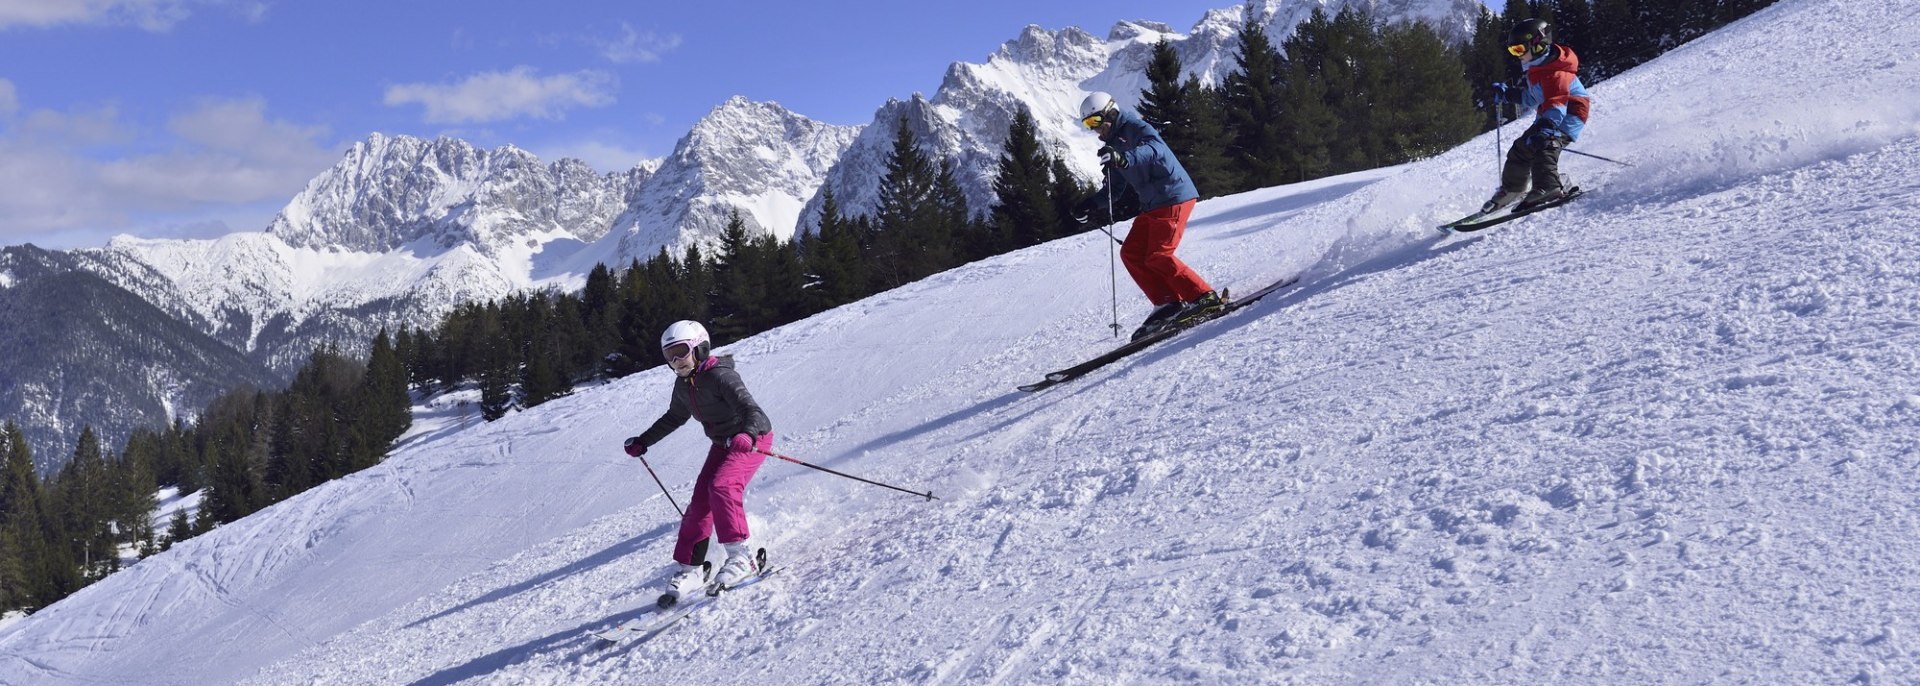 In der Alpenwelt Karwendel gibt es Skispaß für Groß und Klein, © Alpenwelt Karwendel | Stefan Eisend